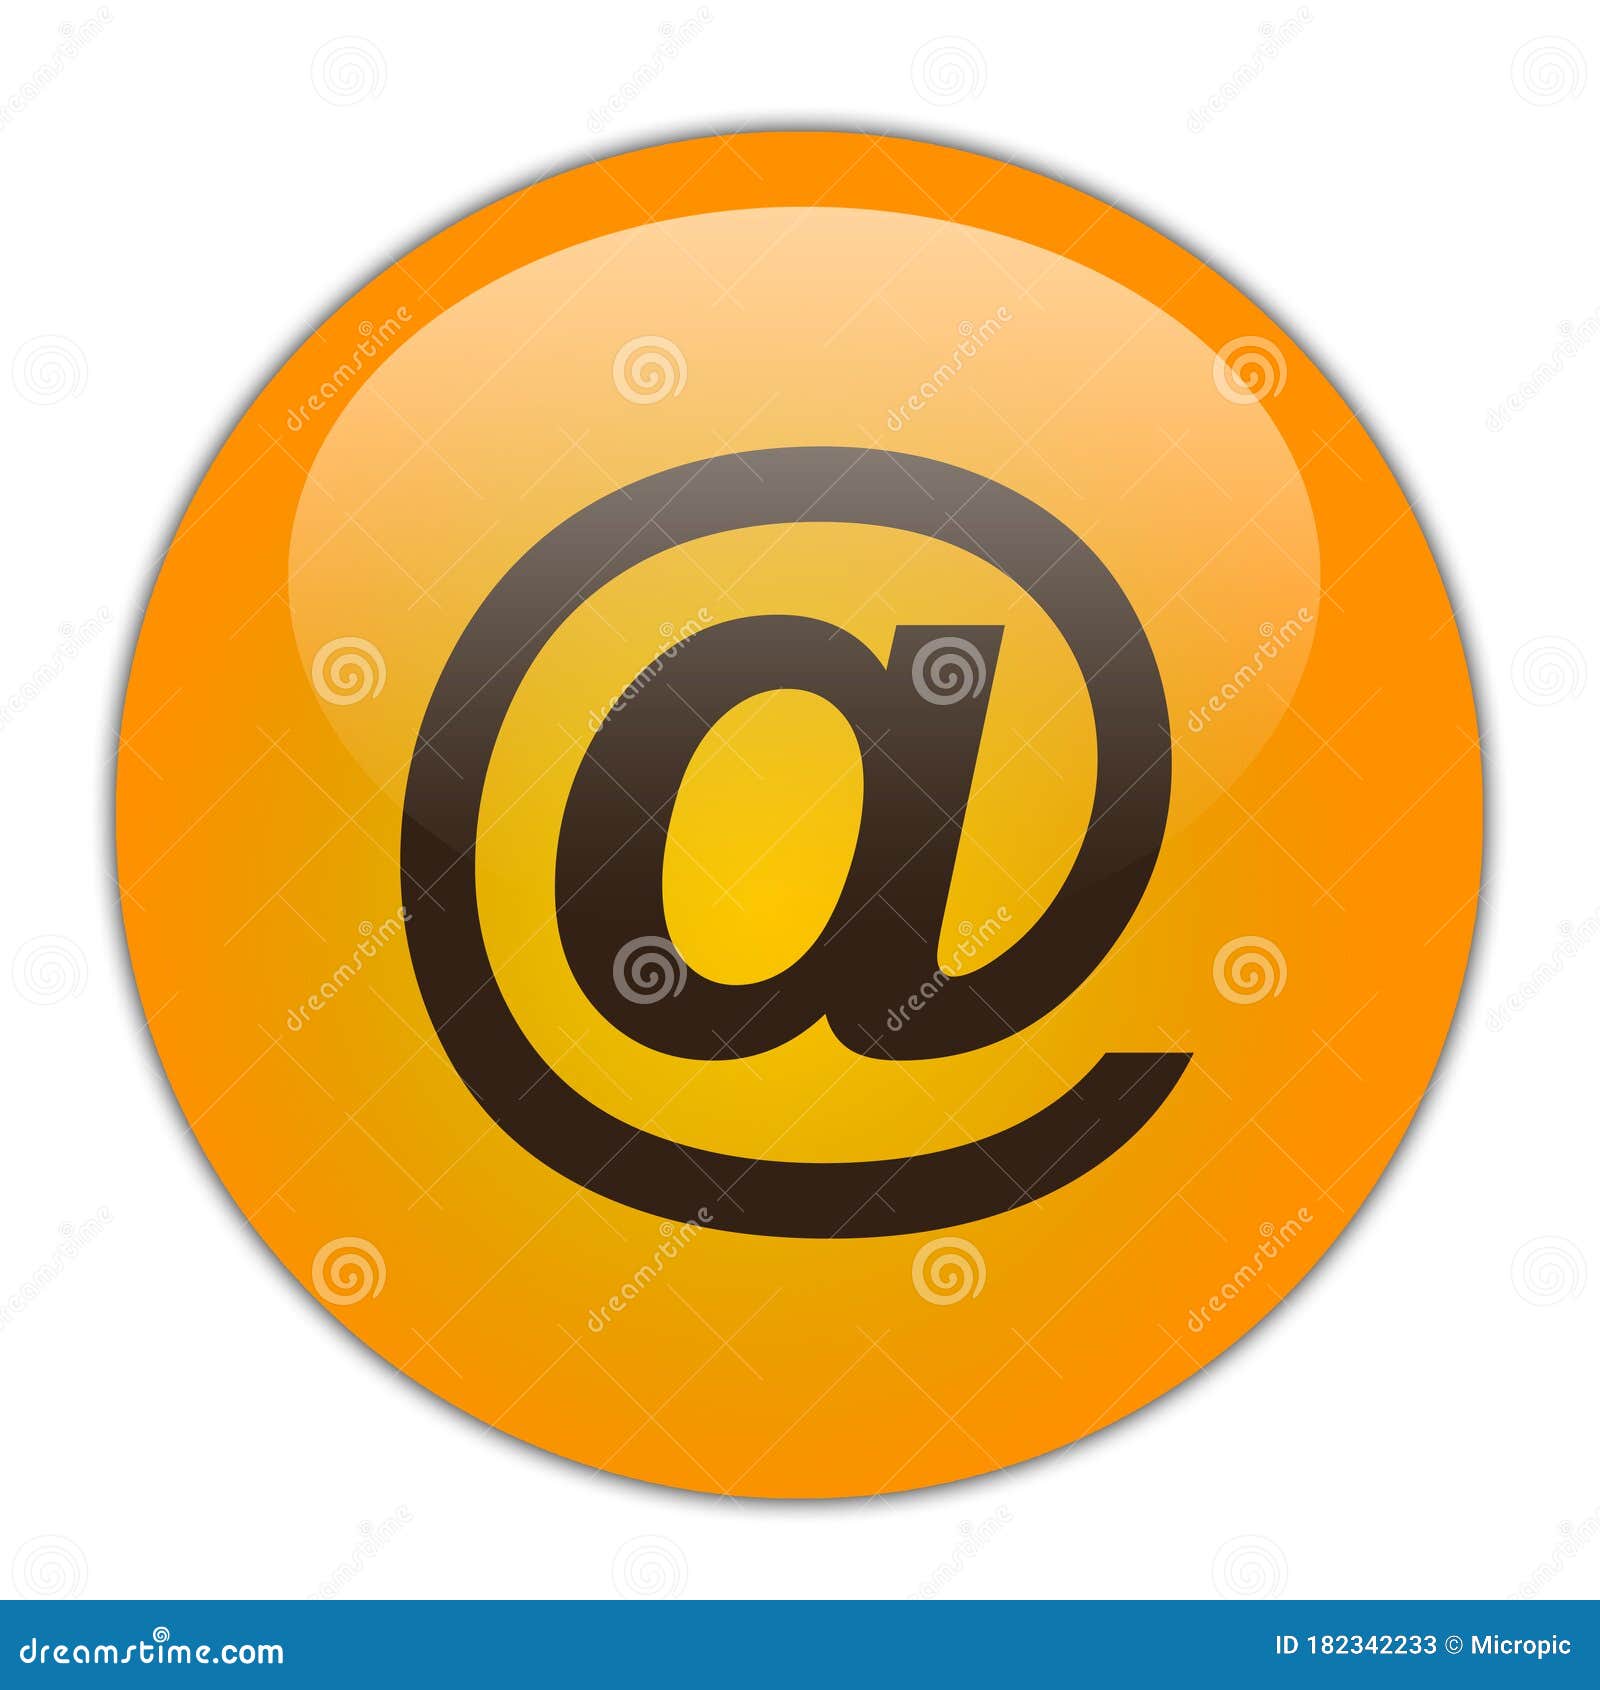 Email Internet Orange Round Crystal Gradient Button Stock ...